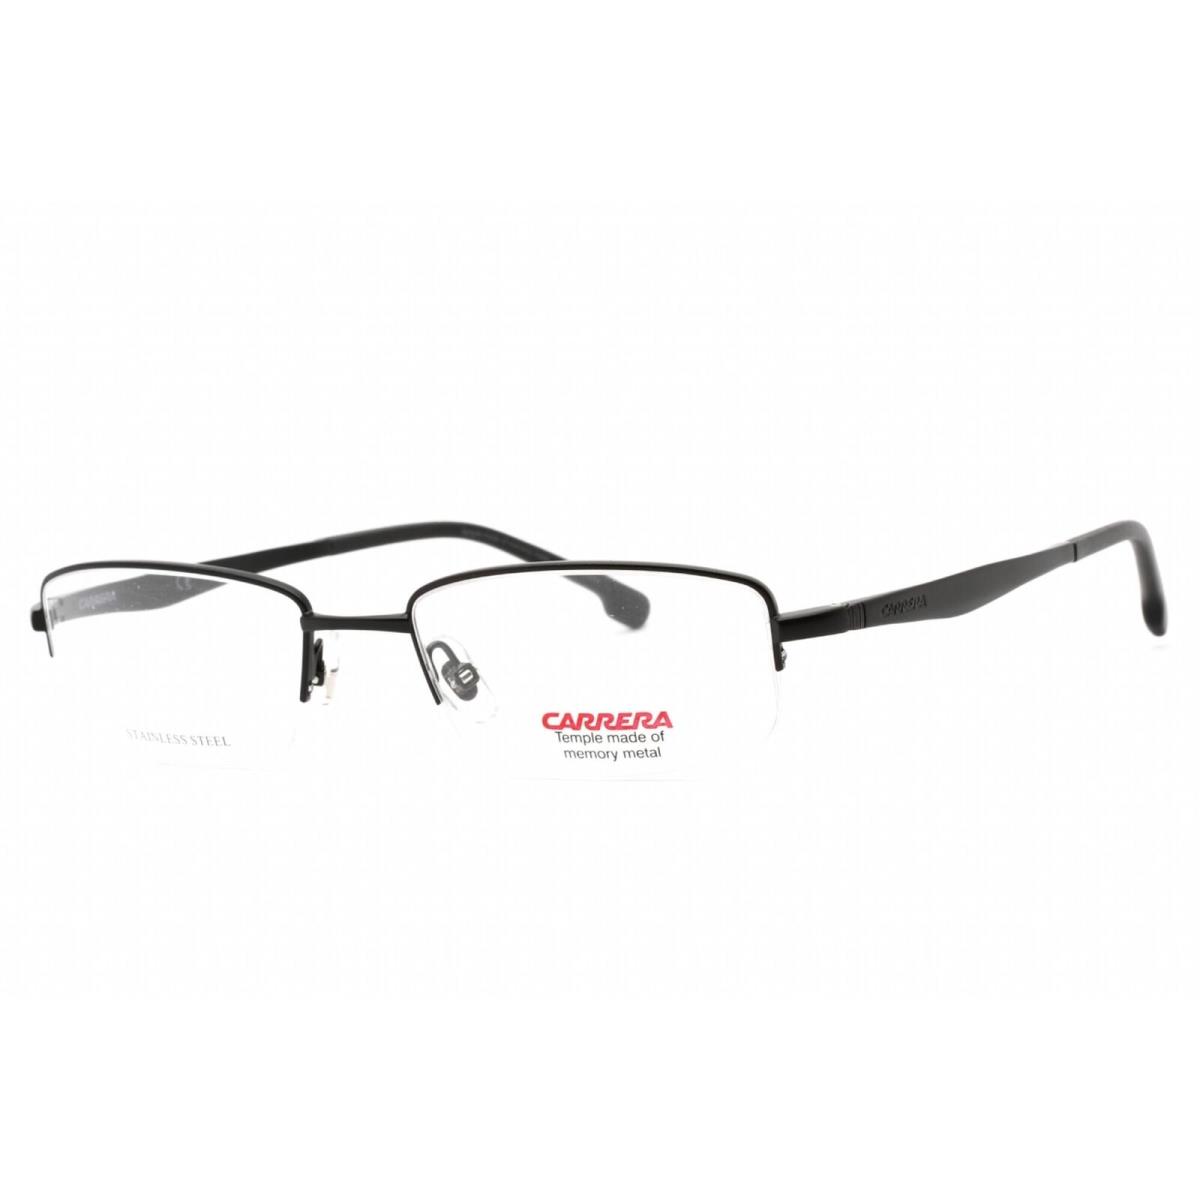 Carrera Men`s Eyeglasses Matte Black Metal Half Rim Frame Carrera 8860 0003 00